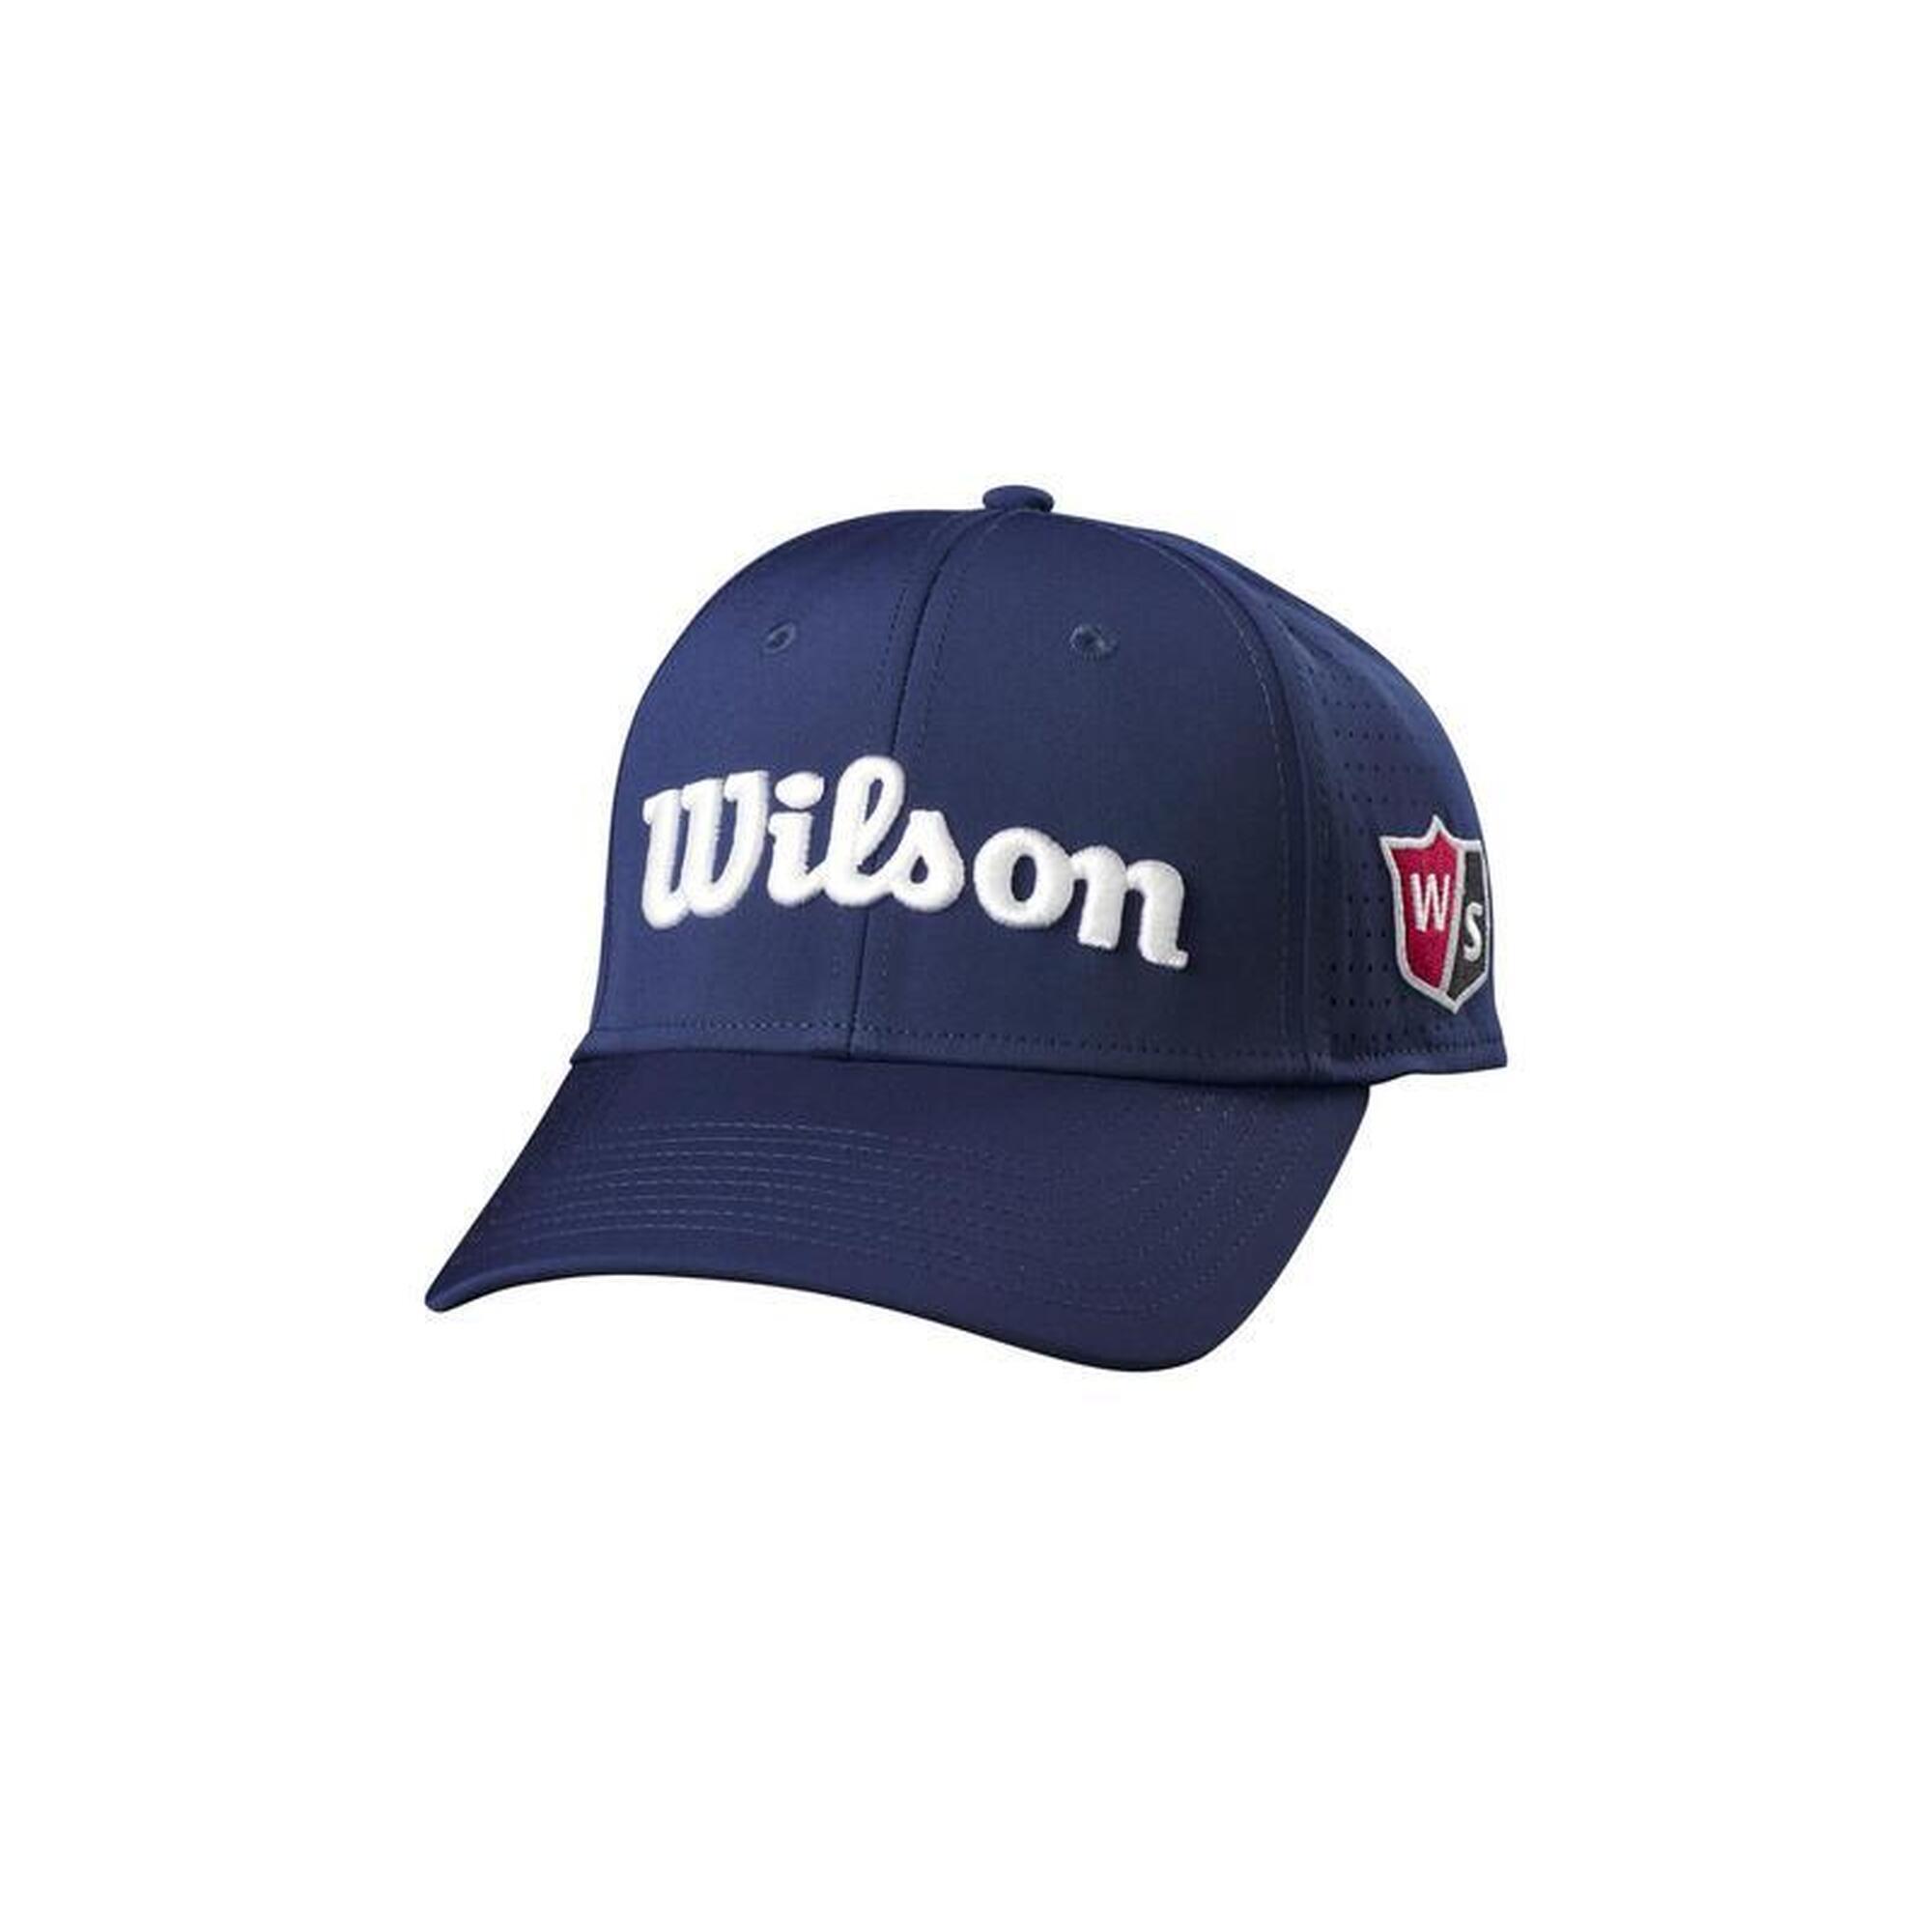 WILSON Casquette de golf   Staff Mesh  Bleu